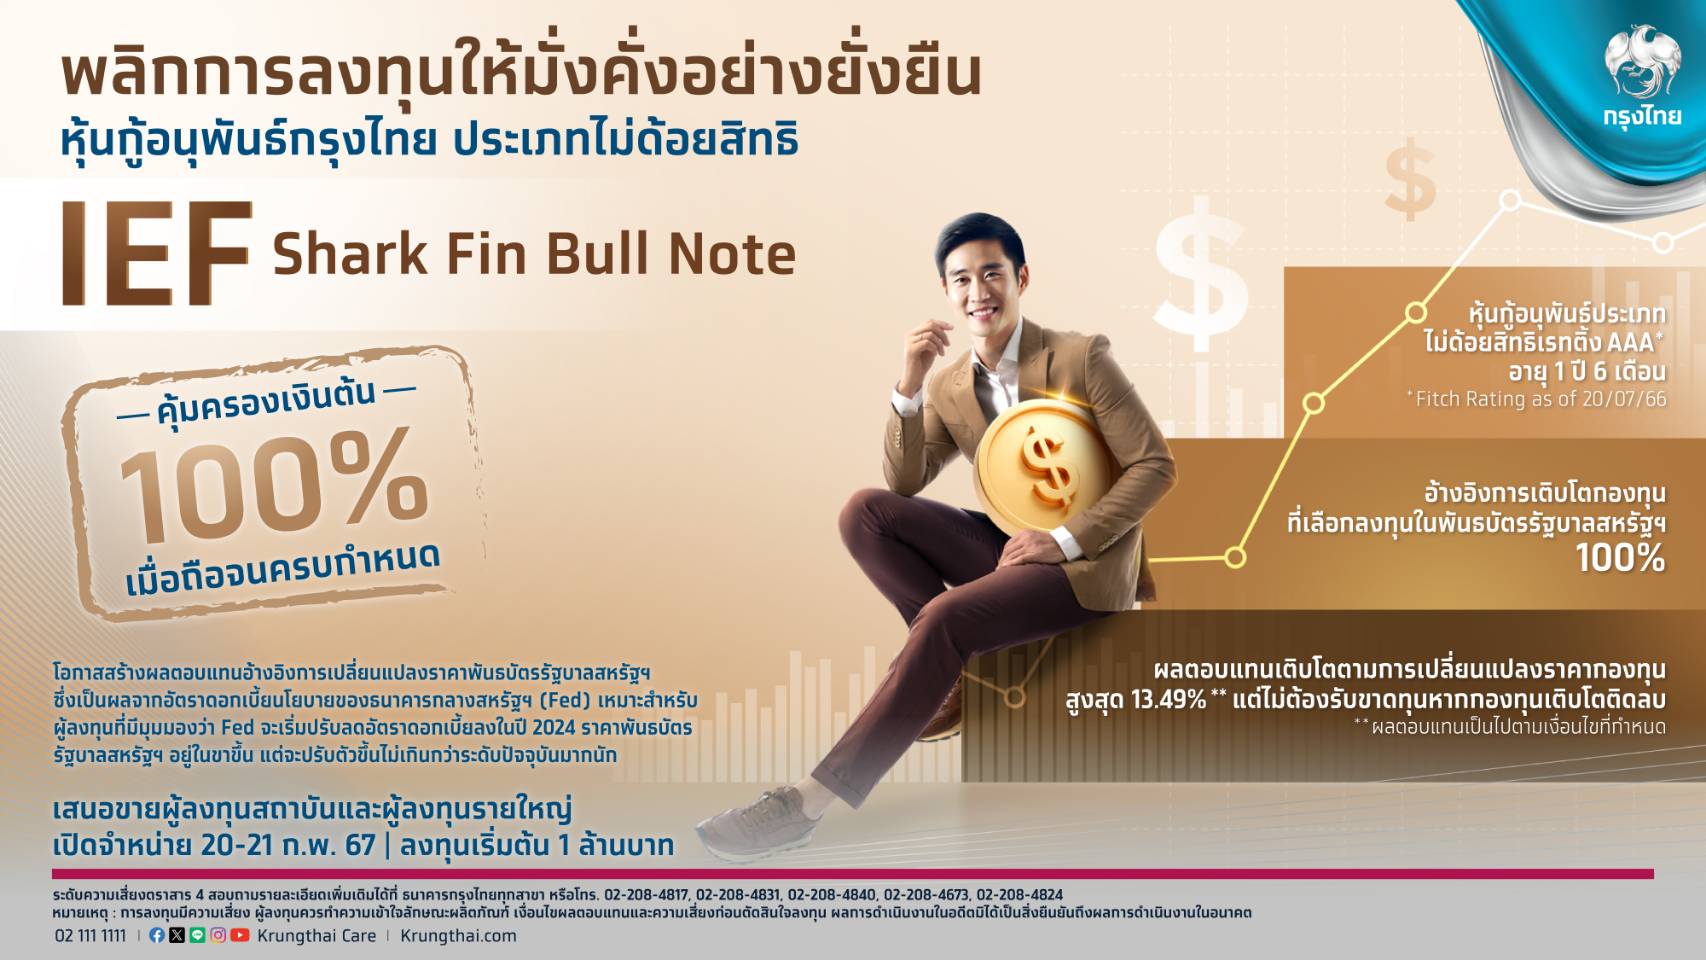 กรุงไทยเสนอขายหุ้นกู้อนุพันธ์ชุดใหม่  “IEF Shark Fin Bull Note” อ้างอิงพันธบัตรรัฐบาลสหรัฐฯ คุ้มครองเงินต้น100% พลิกการลงทุนให้ง่ายและงอกเงยดีเดย์ 20-21 ก.พ.นี้